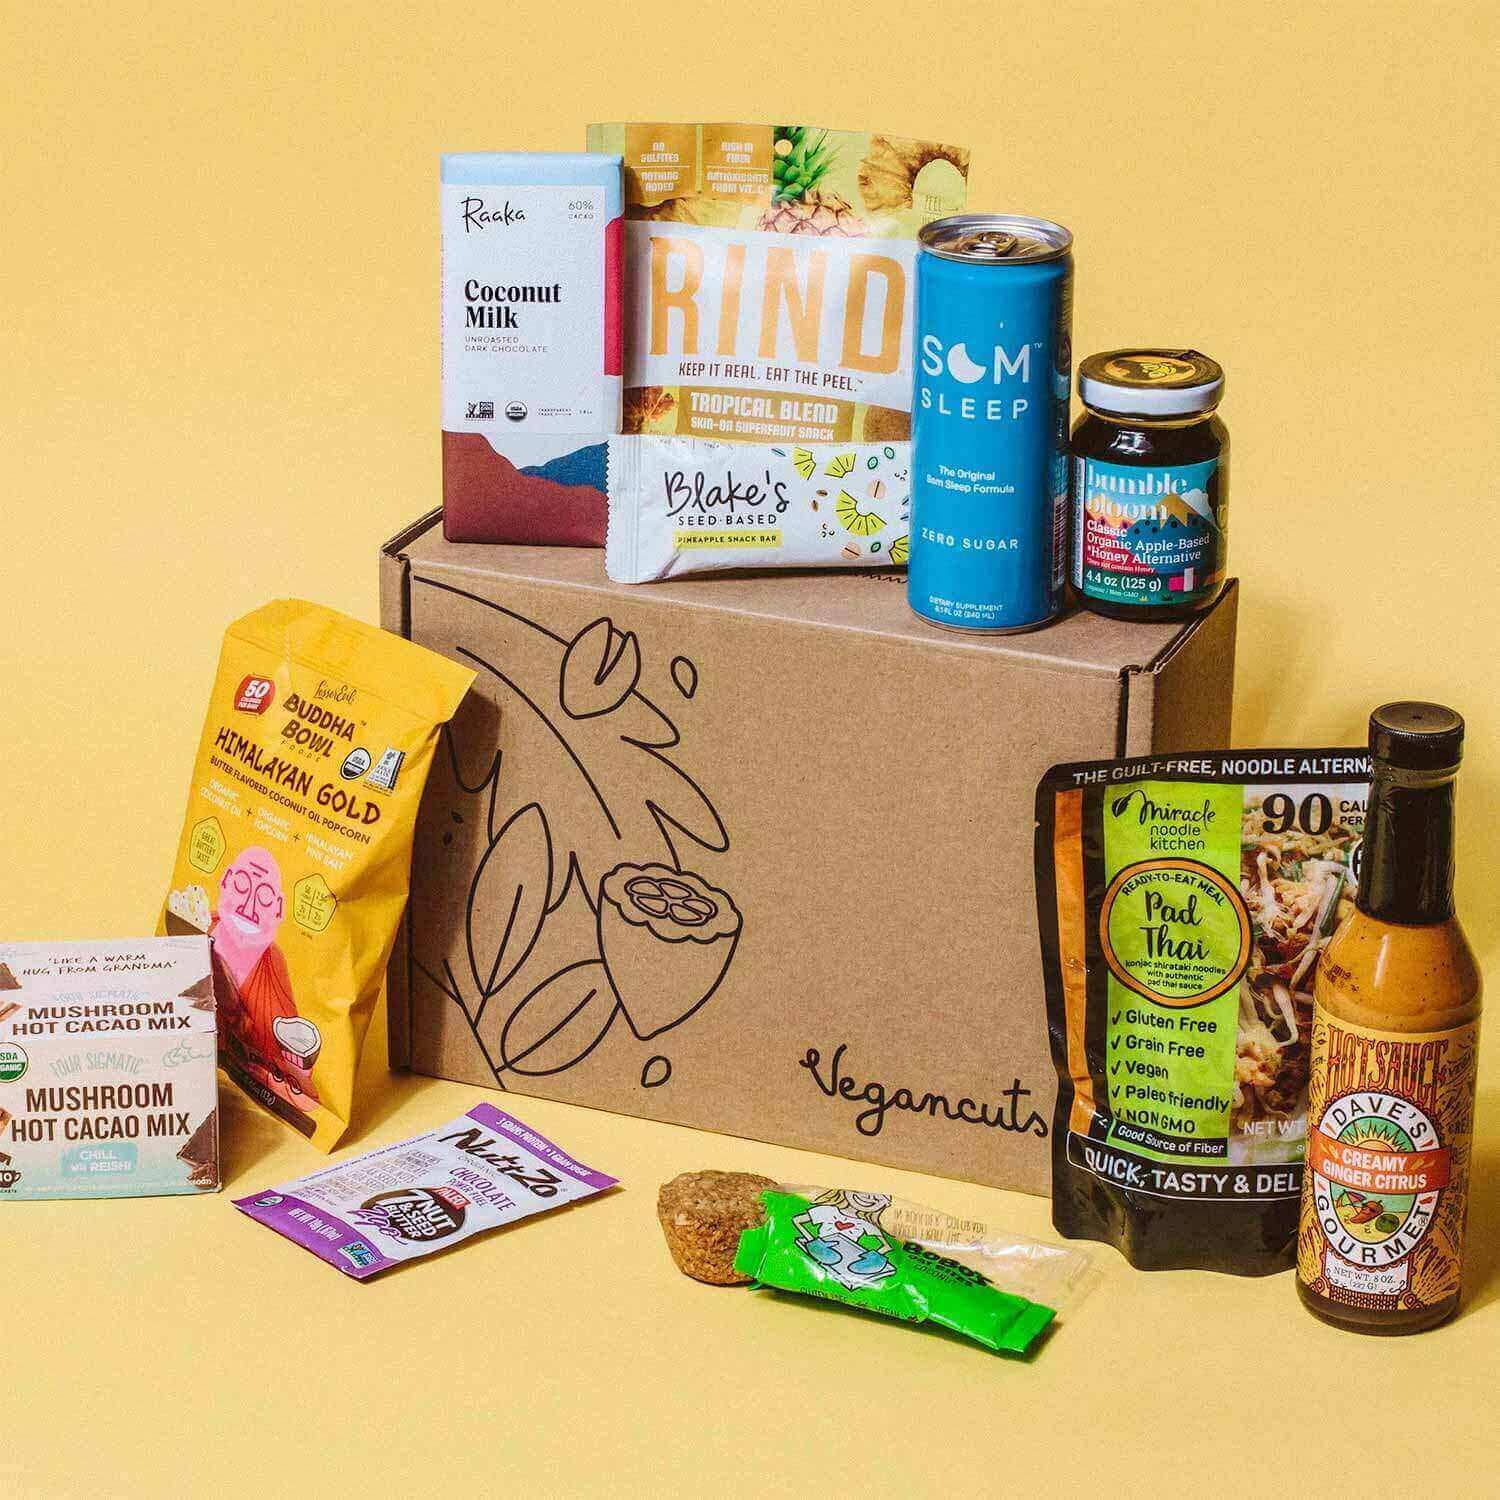 VeganCuts Snack Box